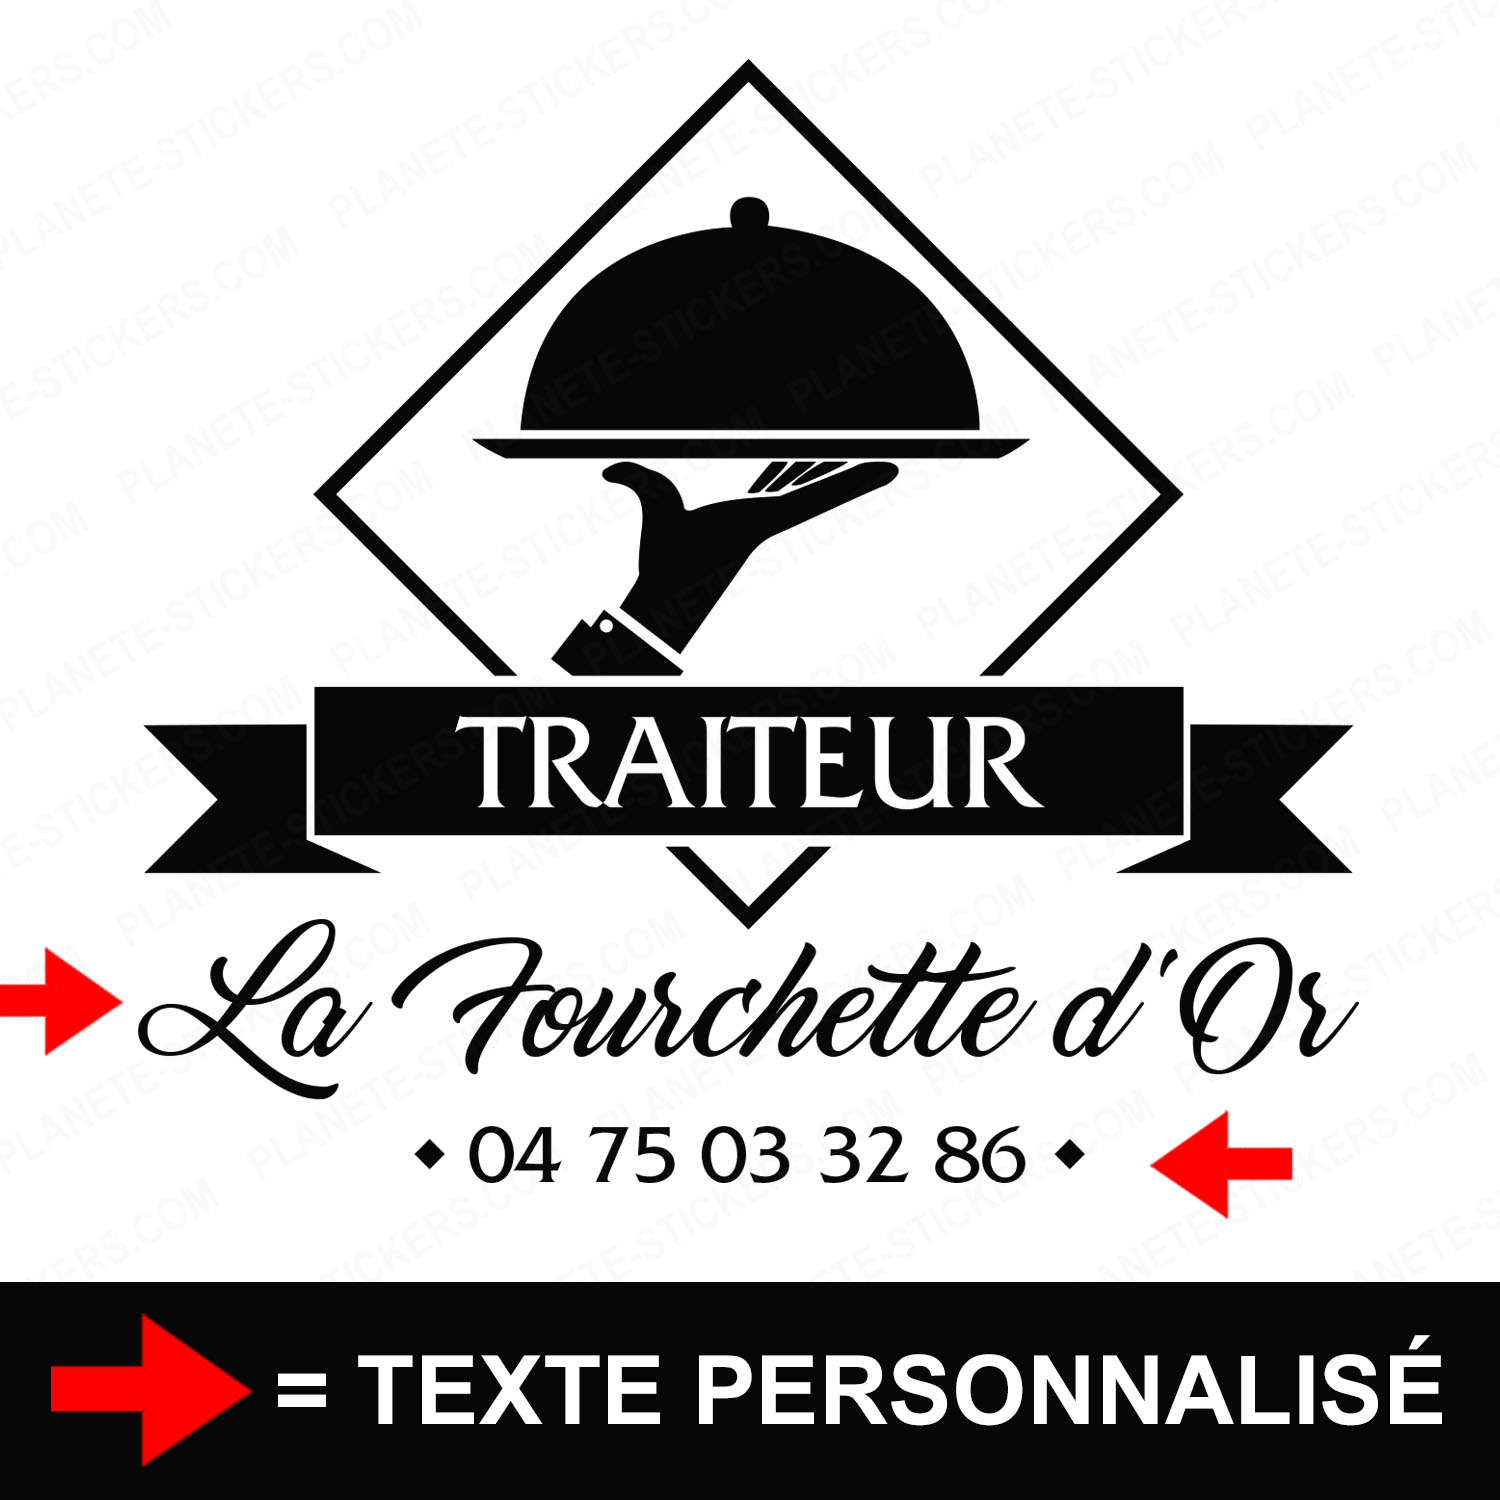 ref11traiteurvitrine-stickers-traiteur-vitrine-sticker-personnalisé-autocollant-pro-restaurateur-restaurant-vitre-professionnel-logo-service-2